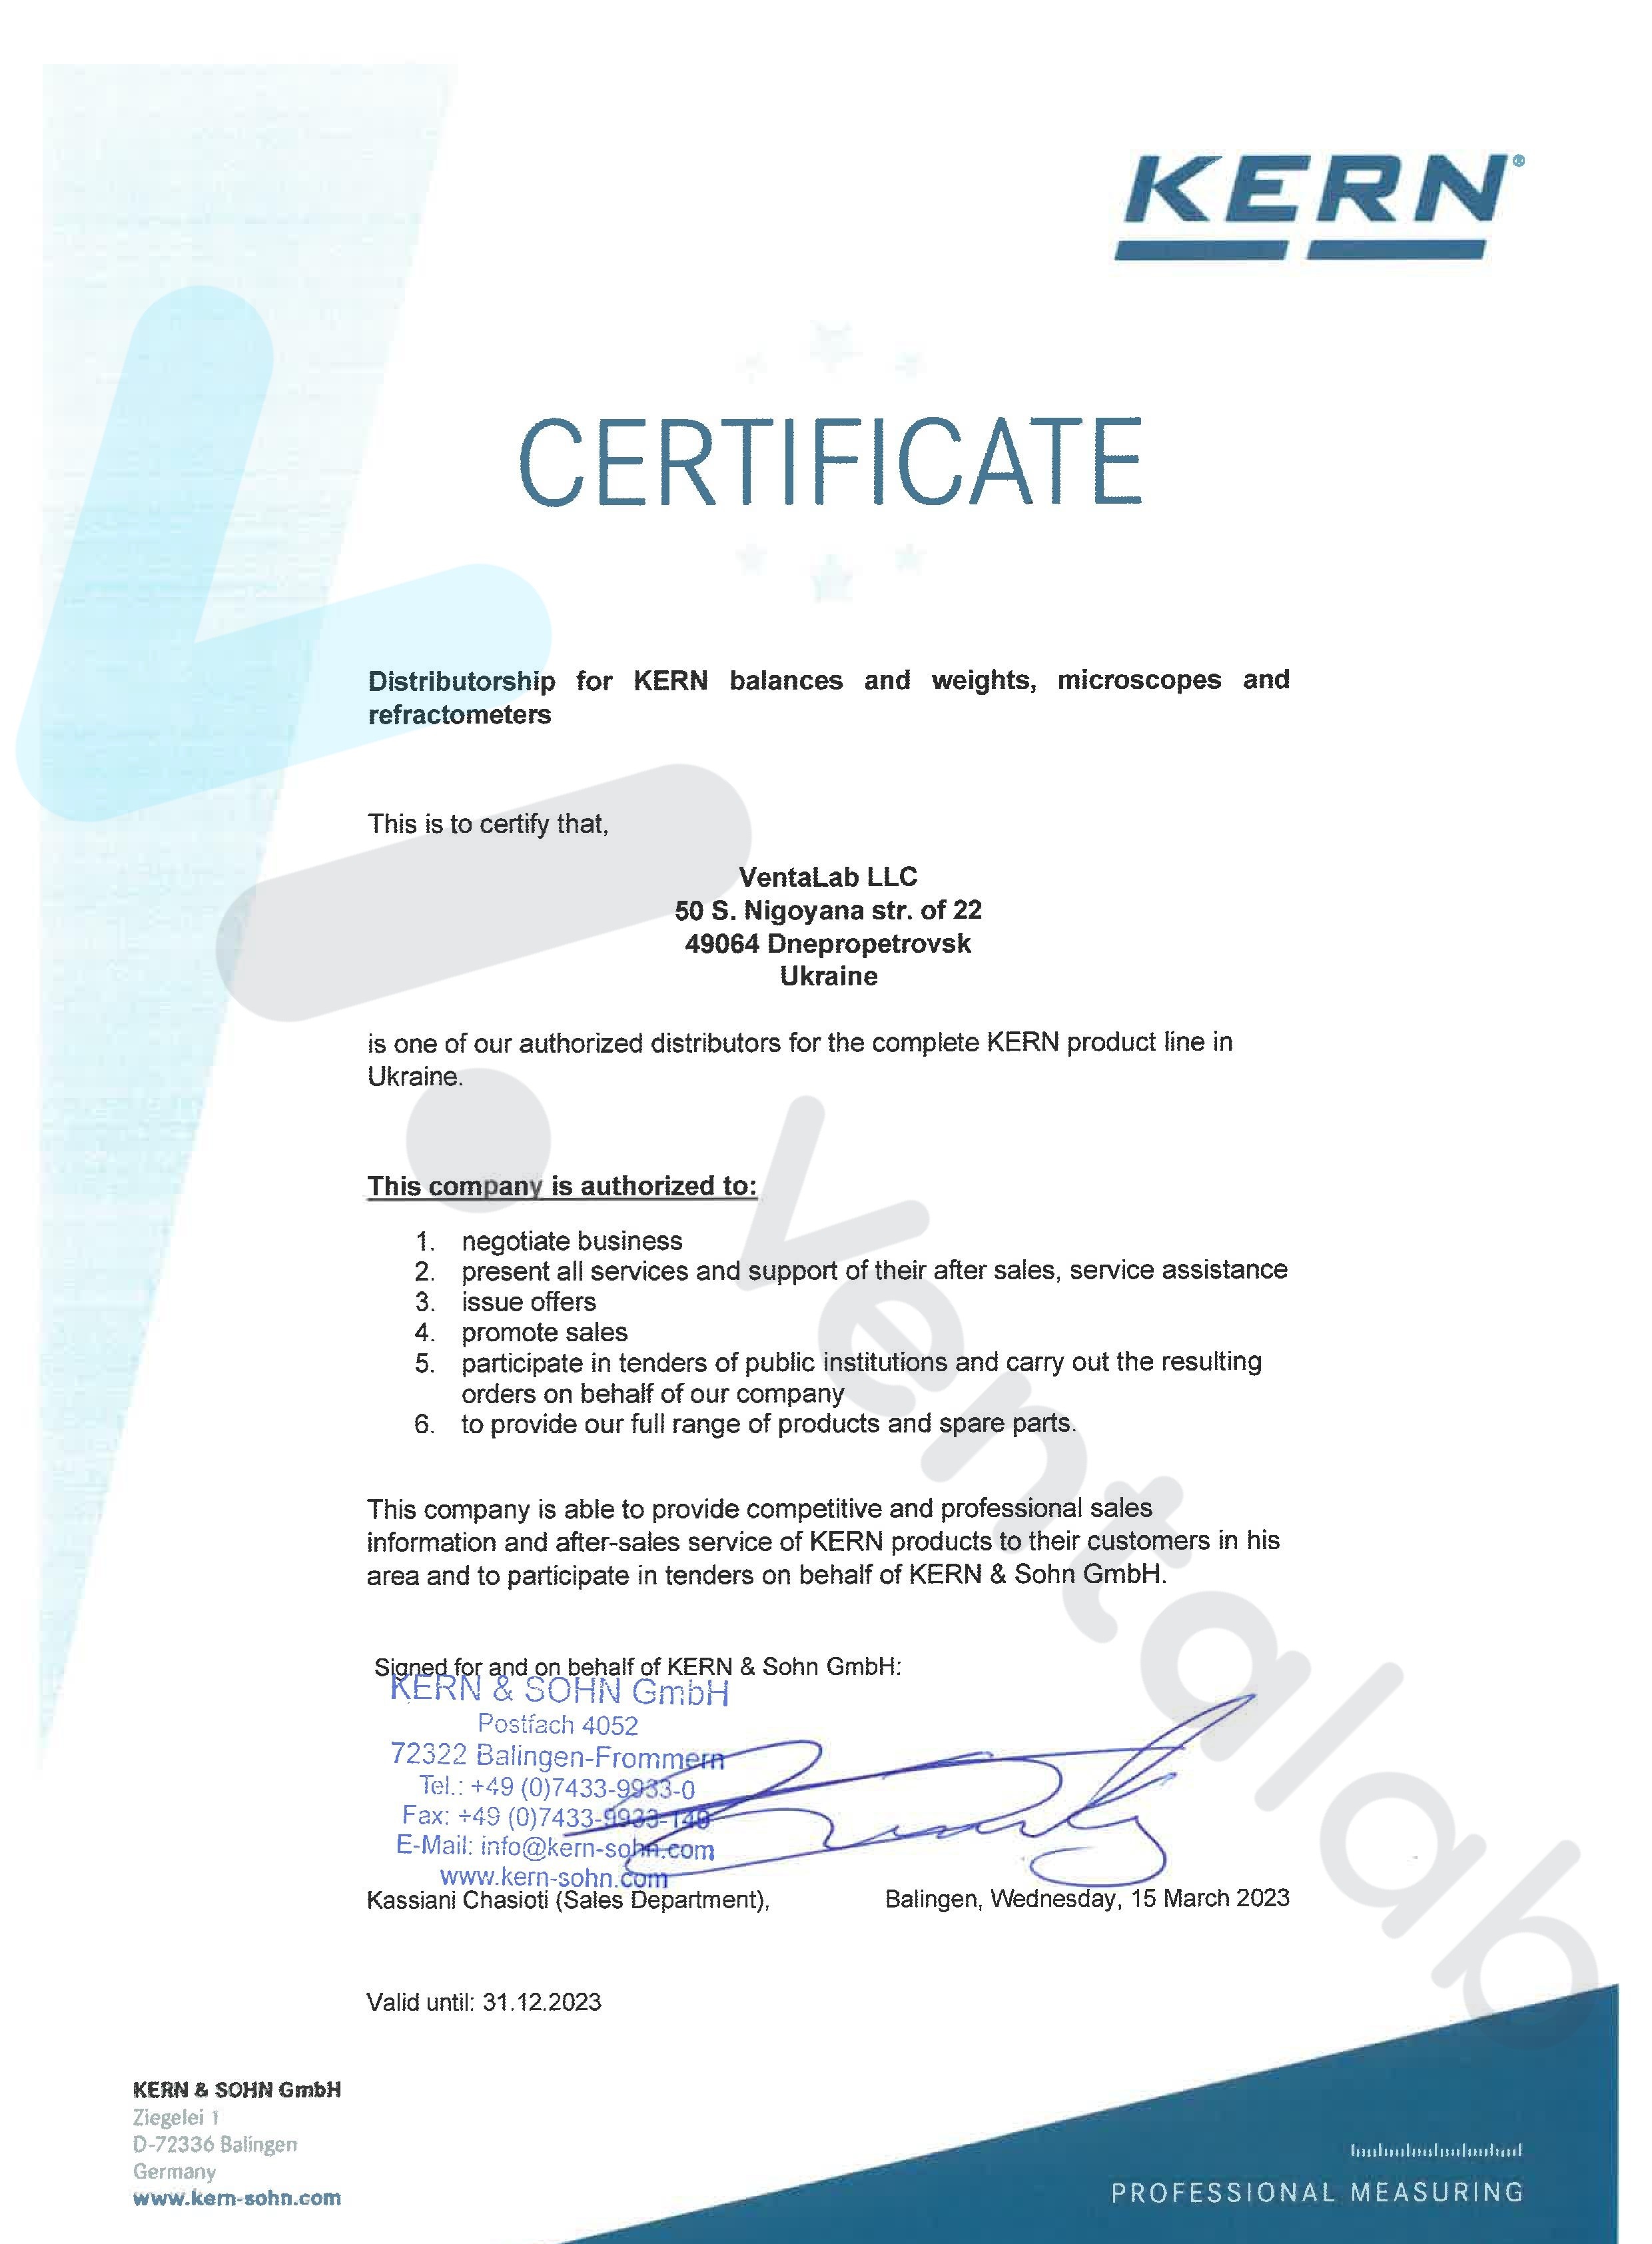 дилерський сертифікат kern